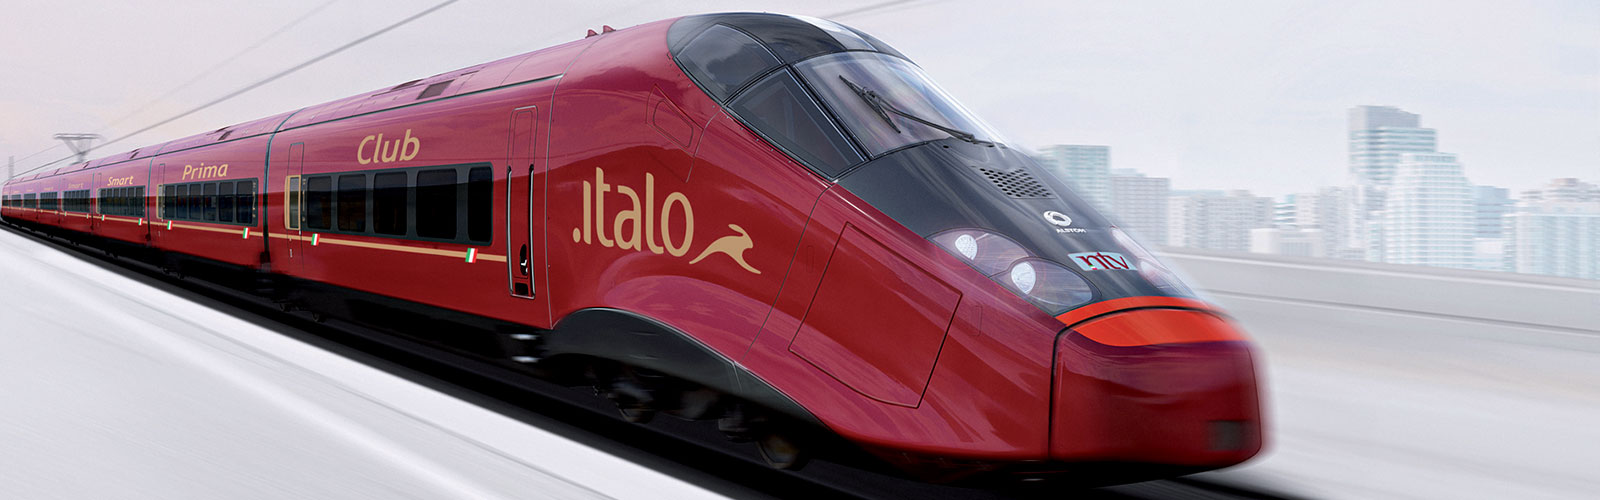 意大利italo/红色法拉利 高速列车 佛罗伦萨到米兰 单程火车票